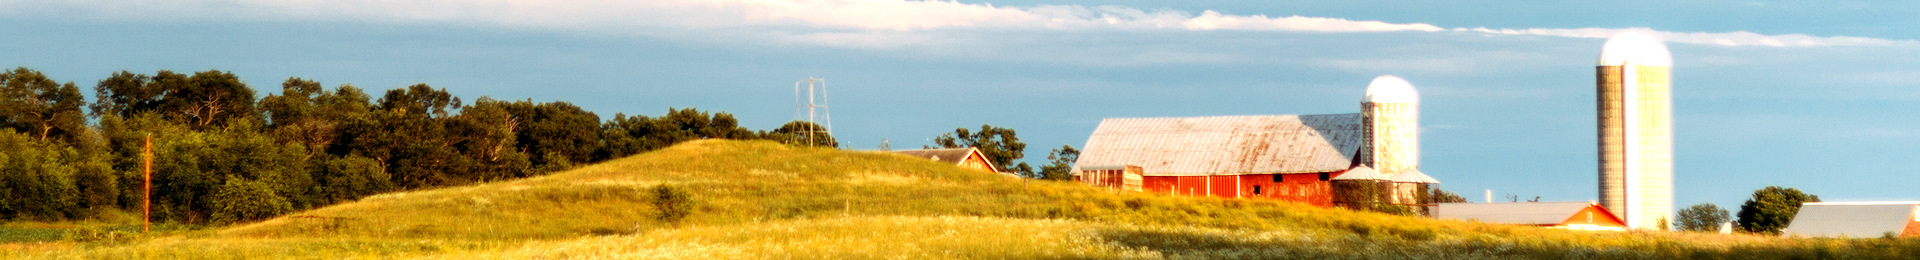 Photograph: Barn in field.